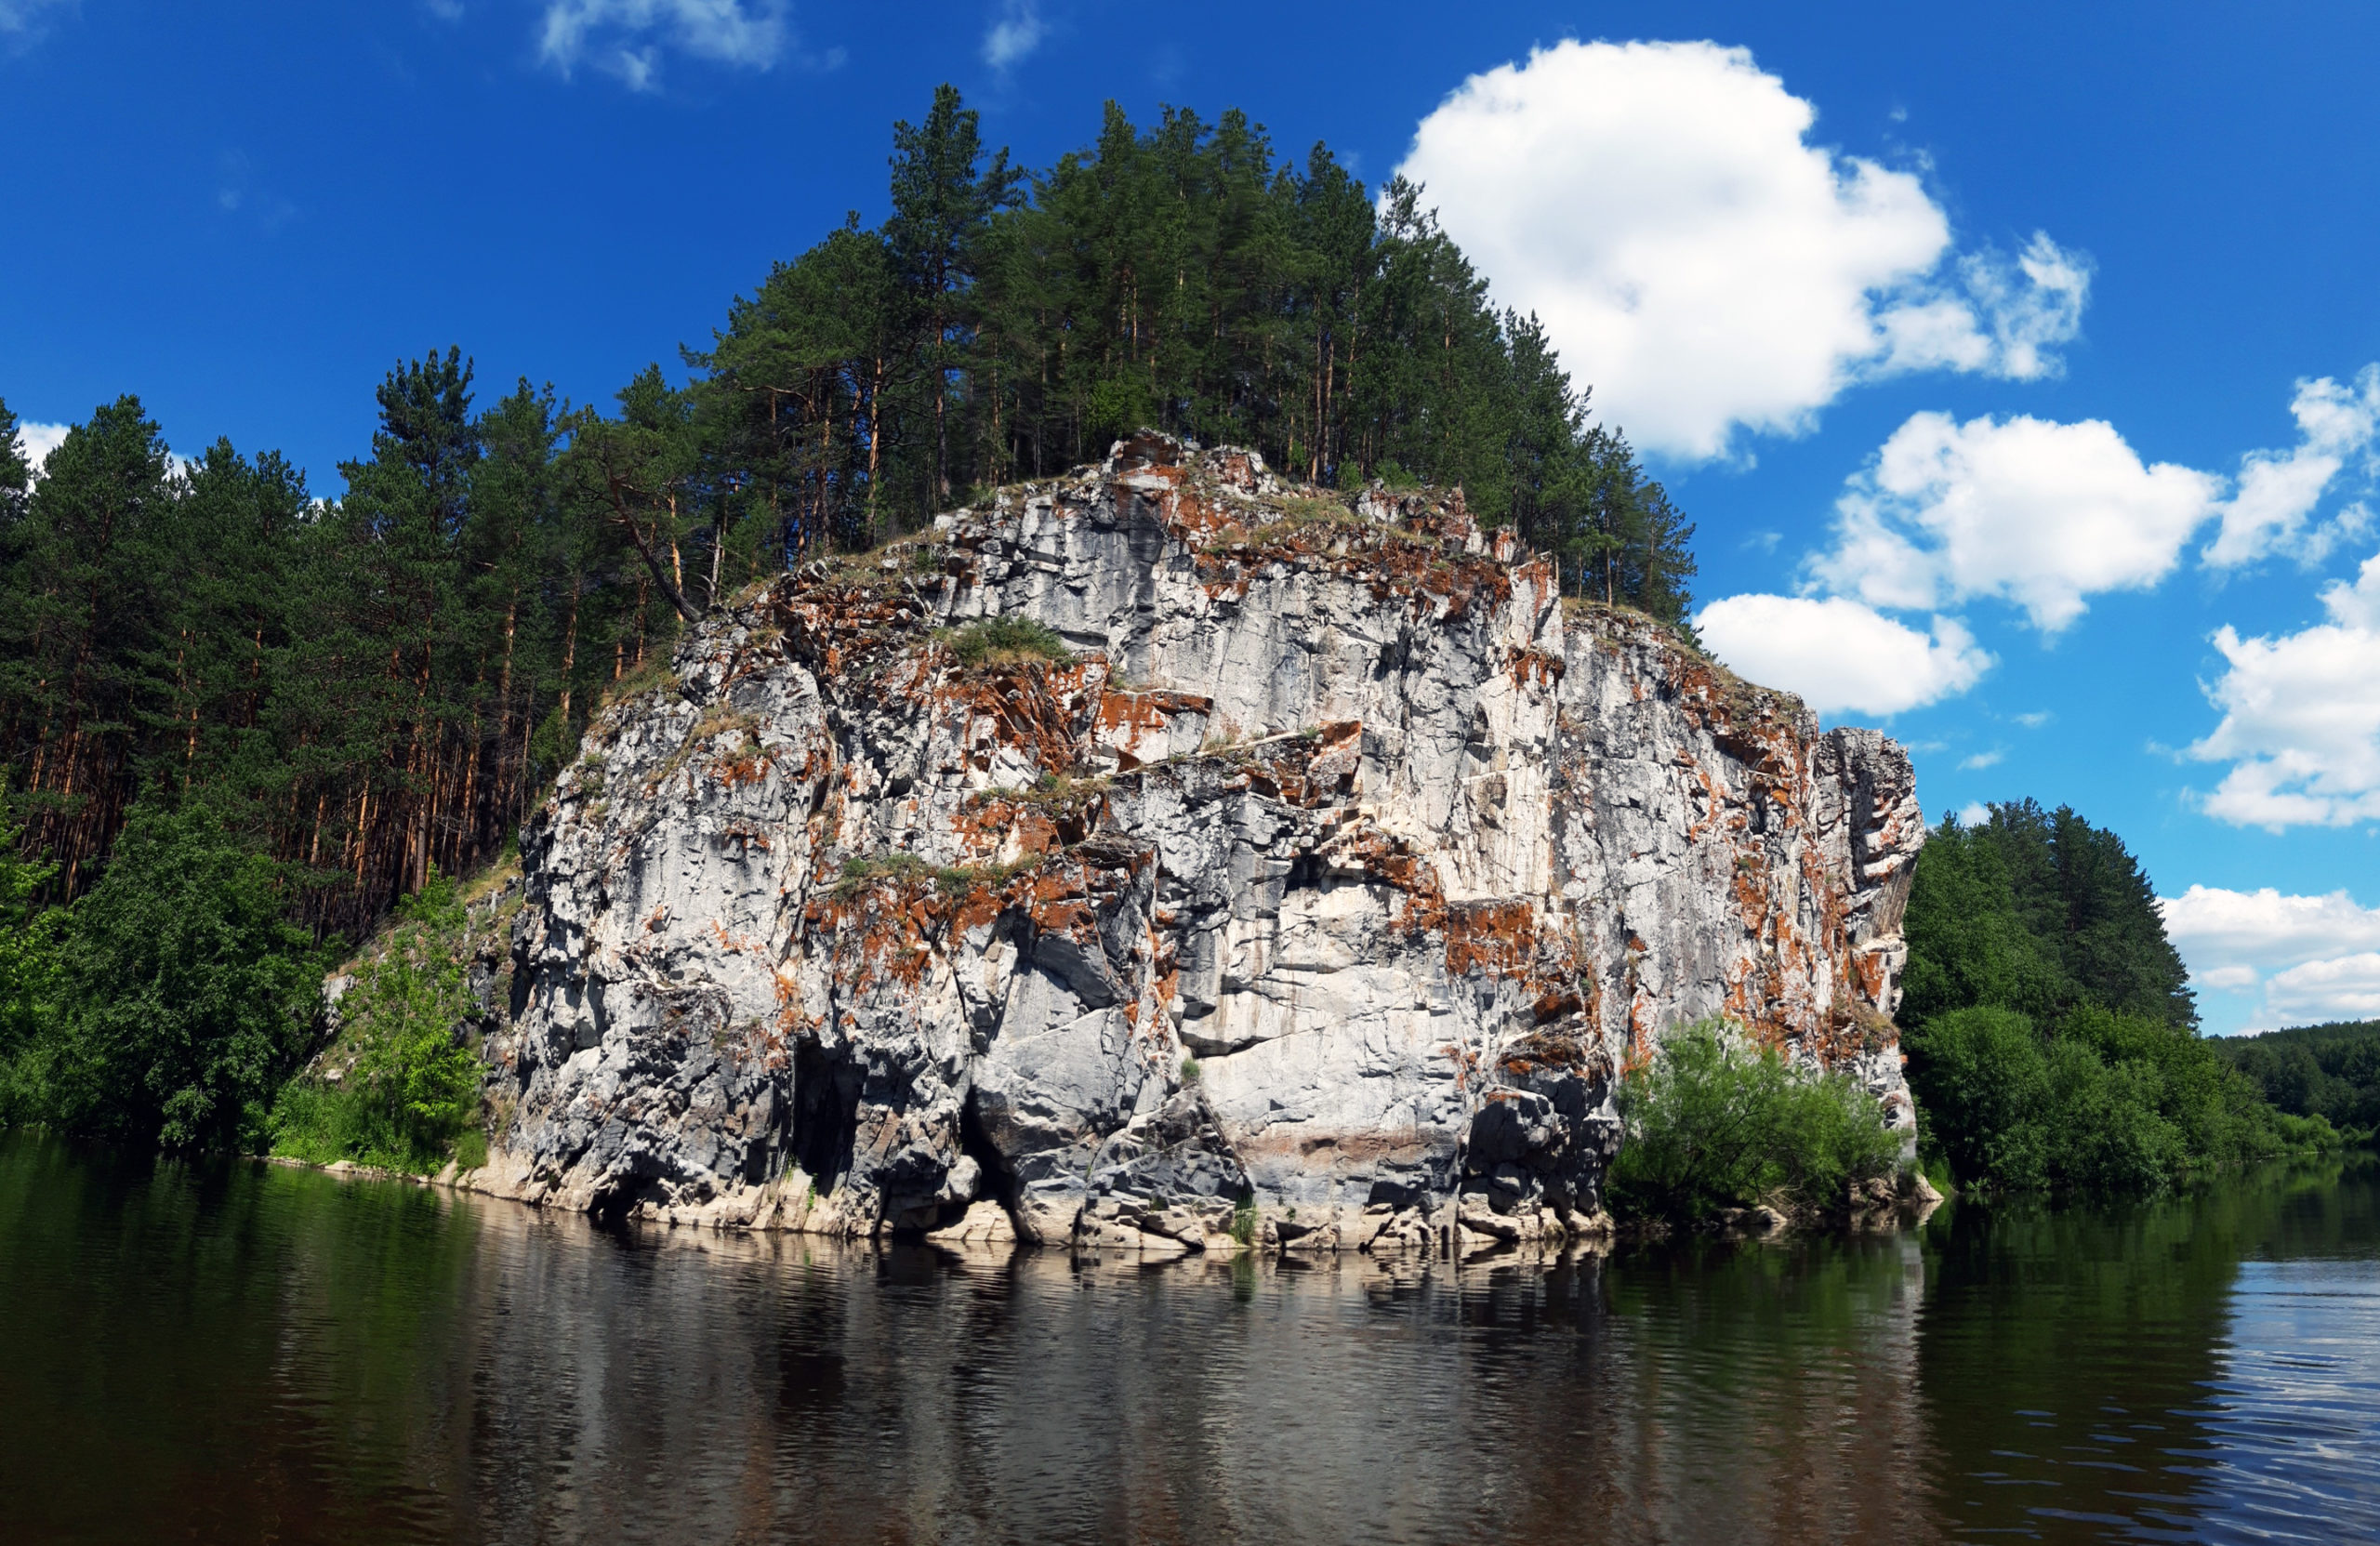 Безымянная известняковая скала на реке Реж между Першино и Голендухино